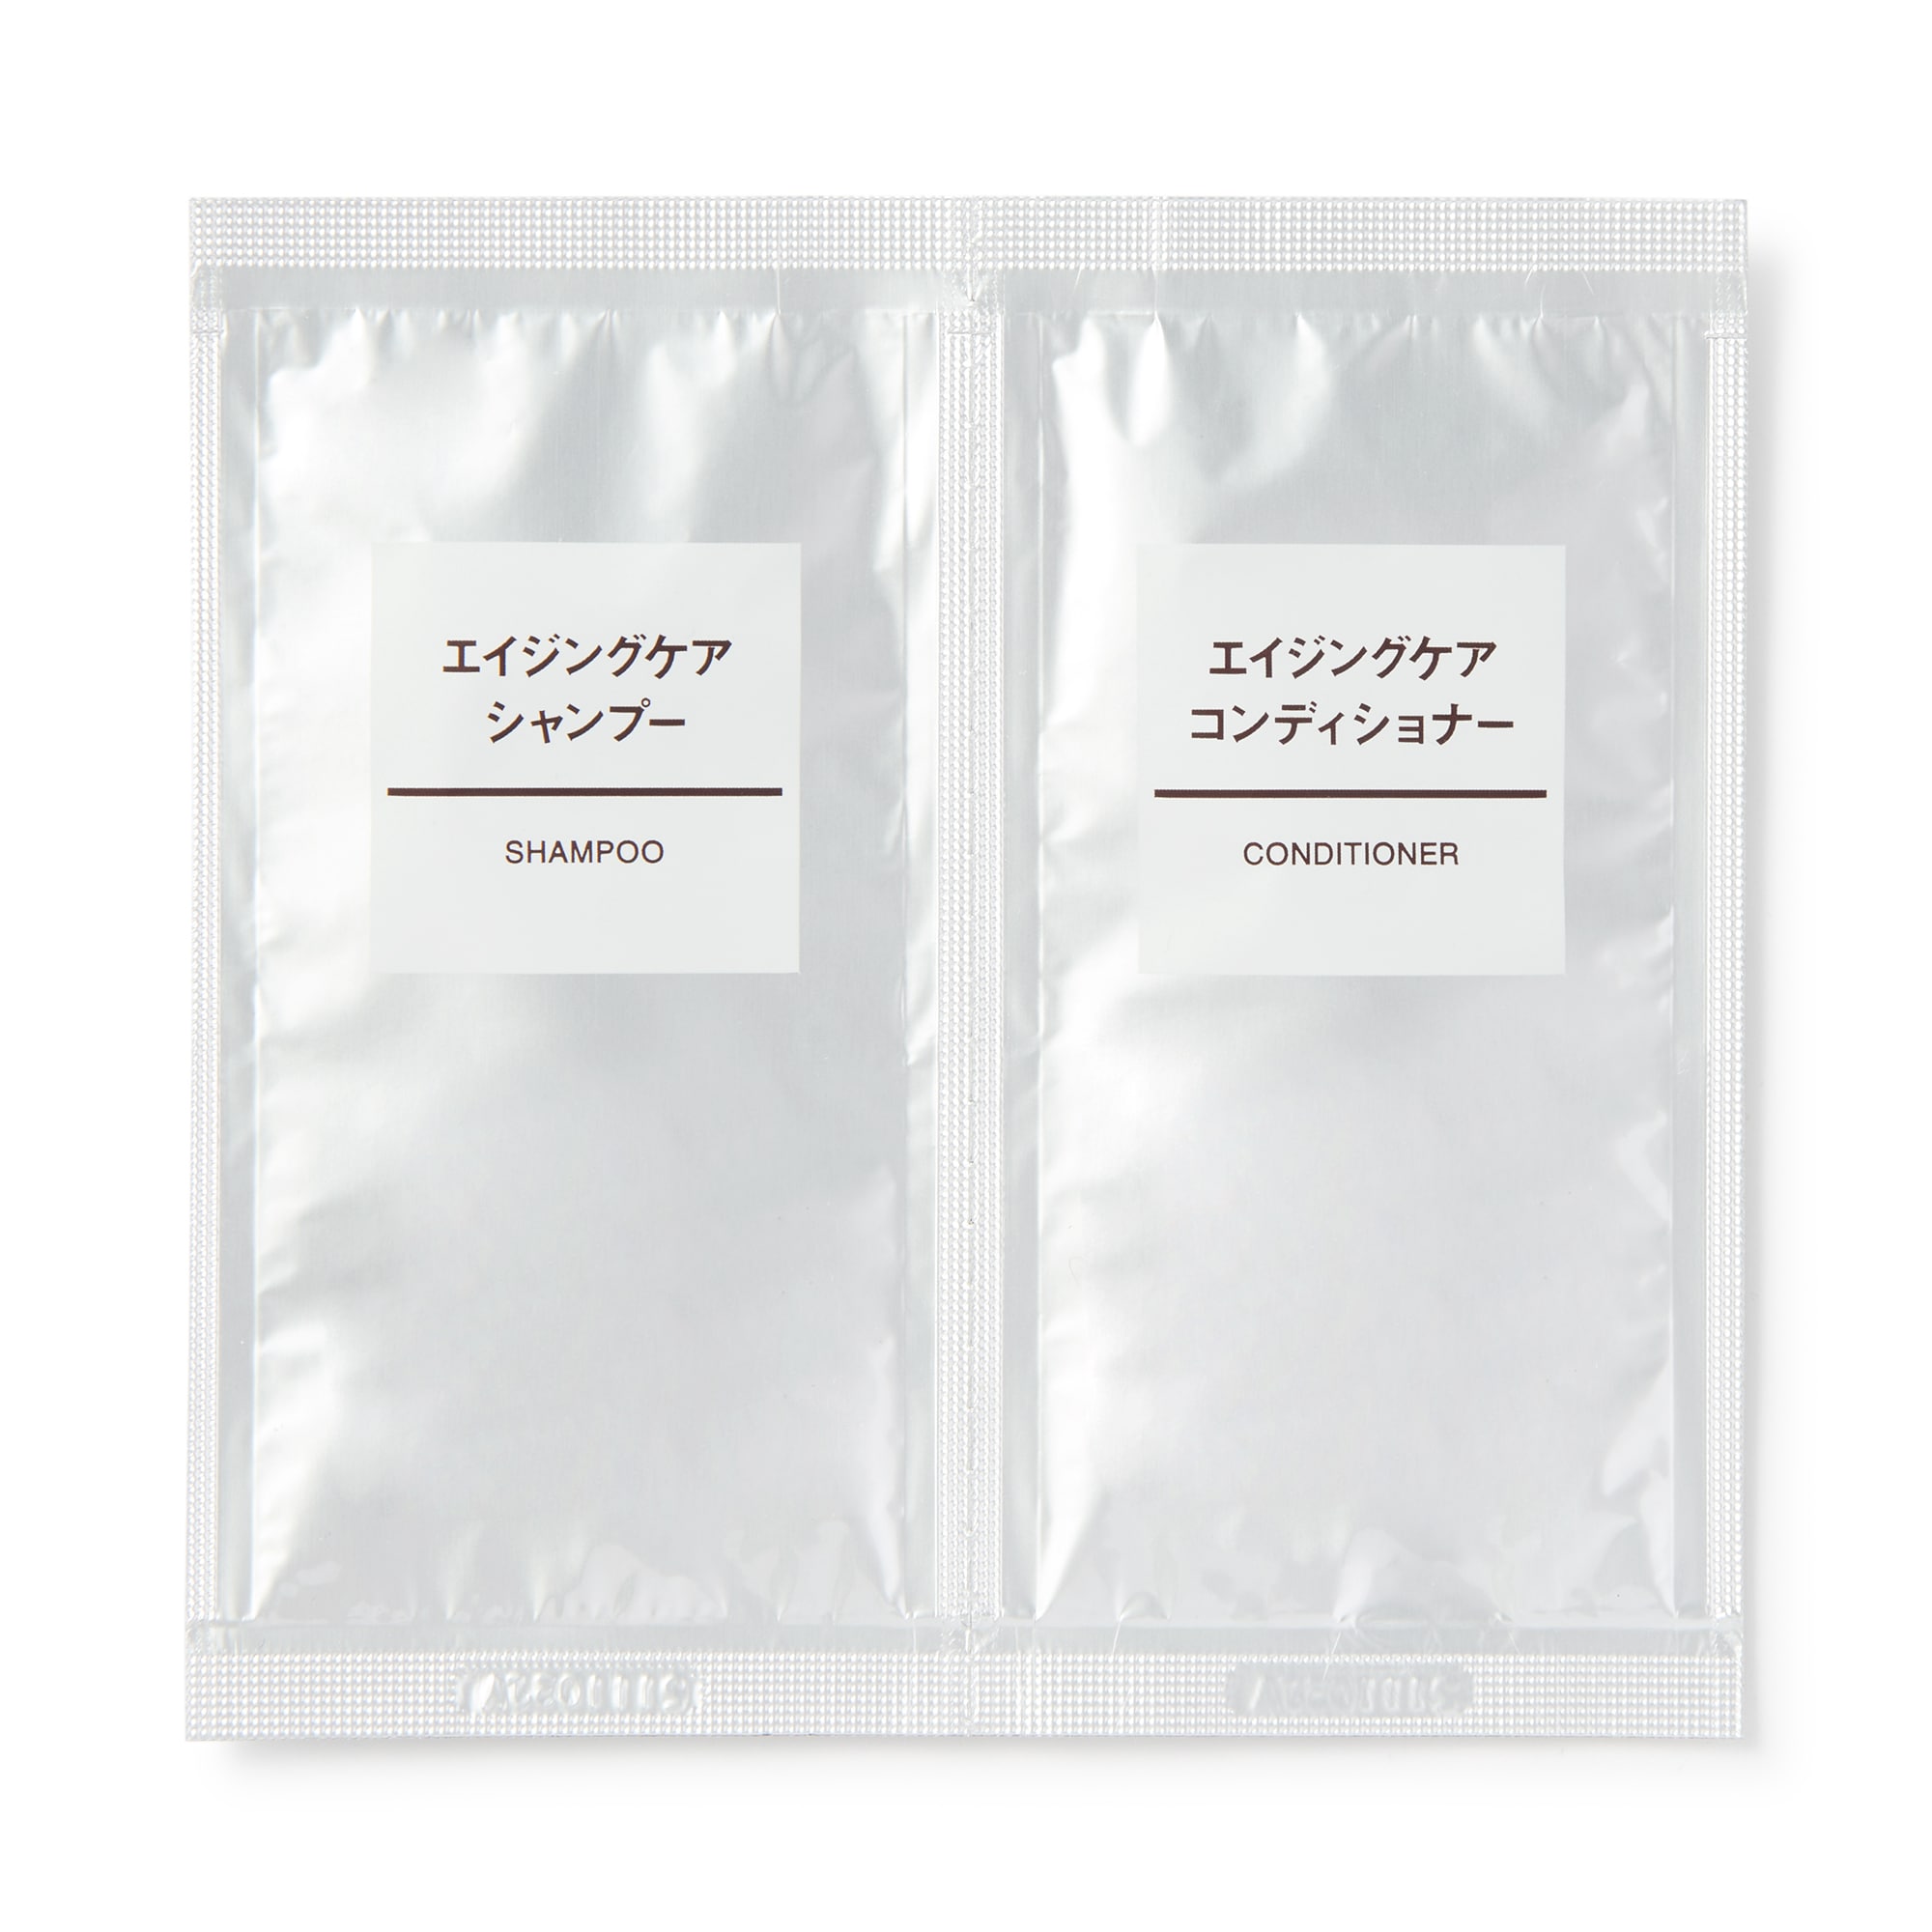 무인양품 일본 에이징 케어 샴푸/컨디셔너 세트